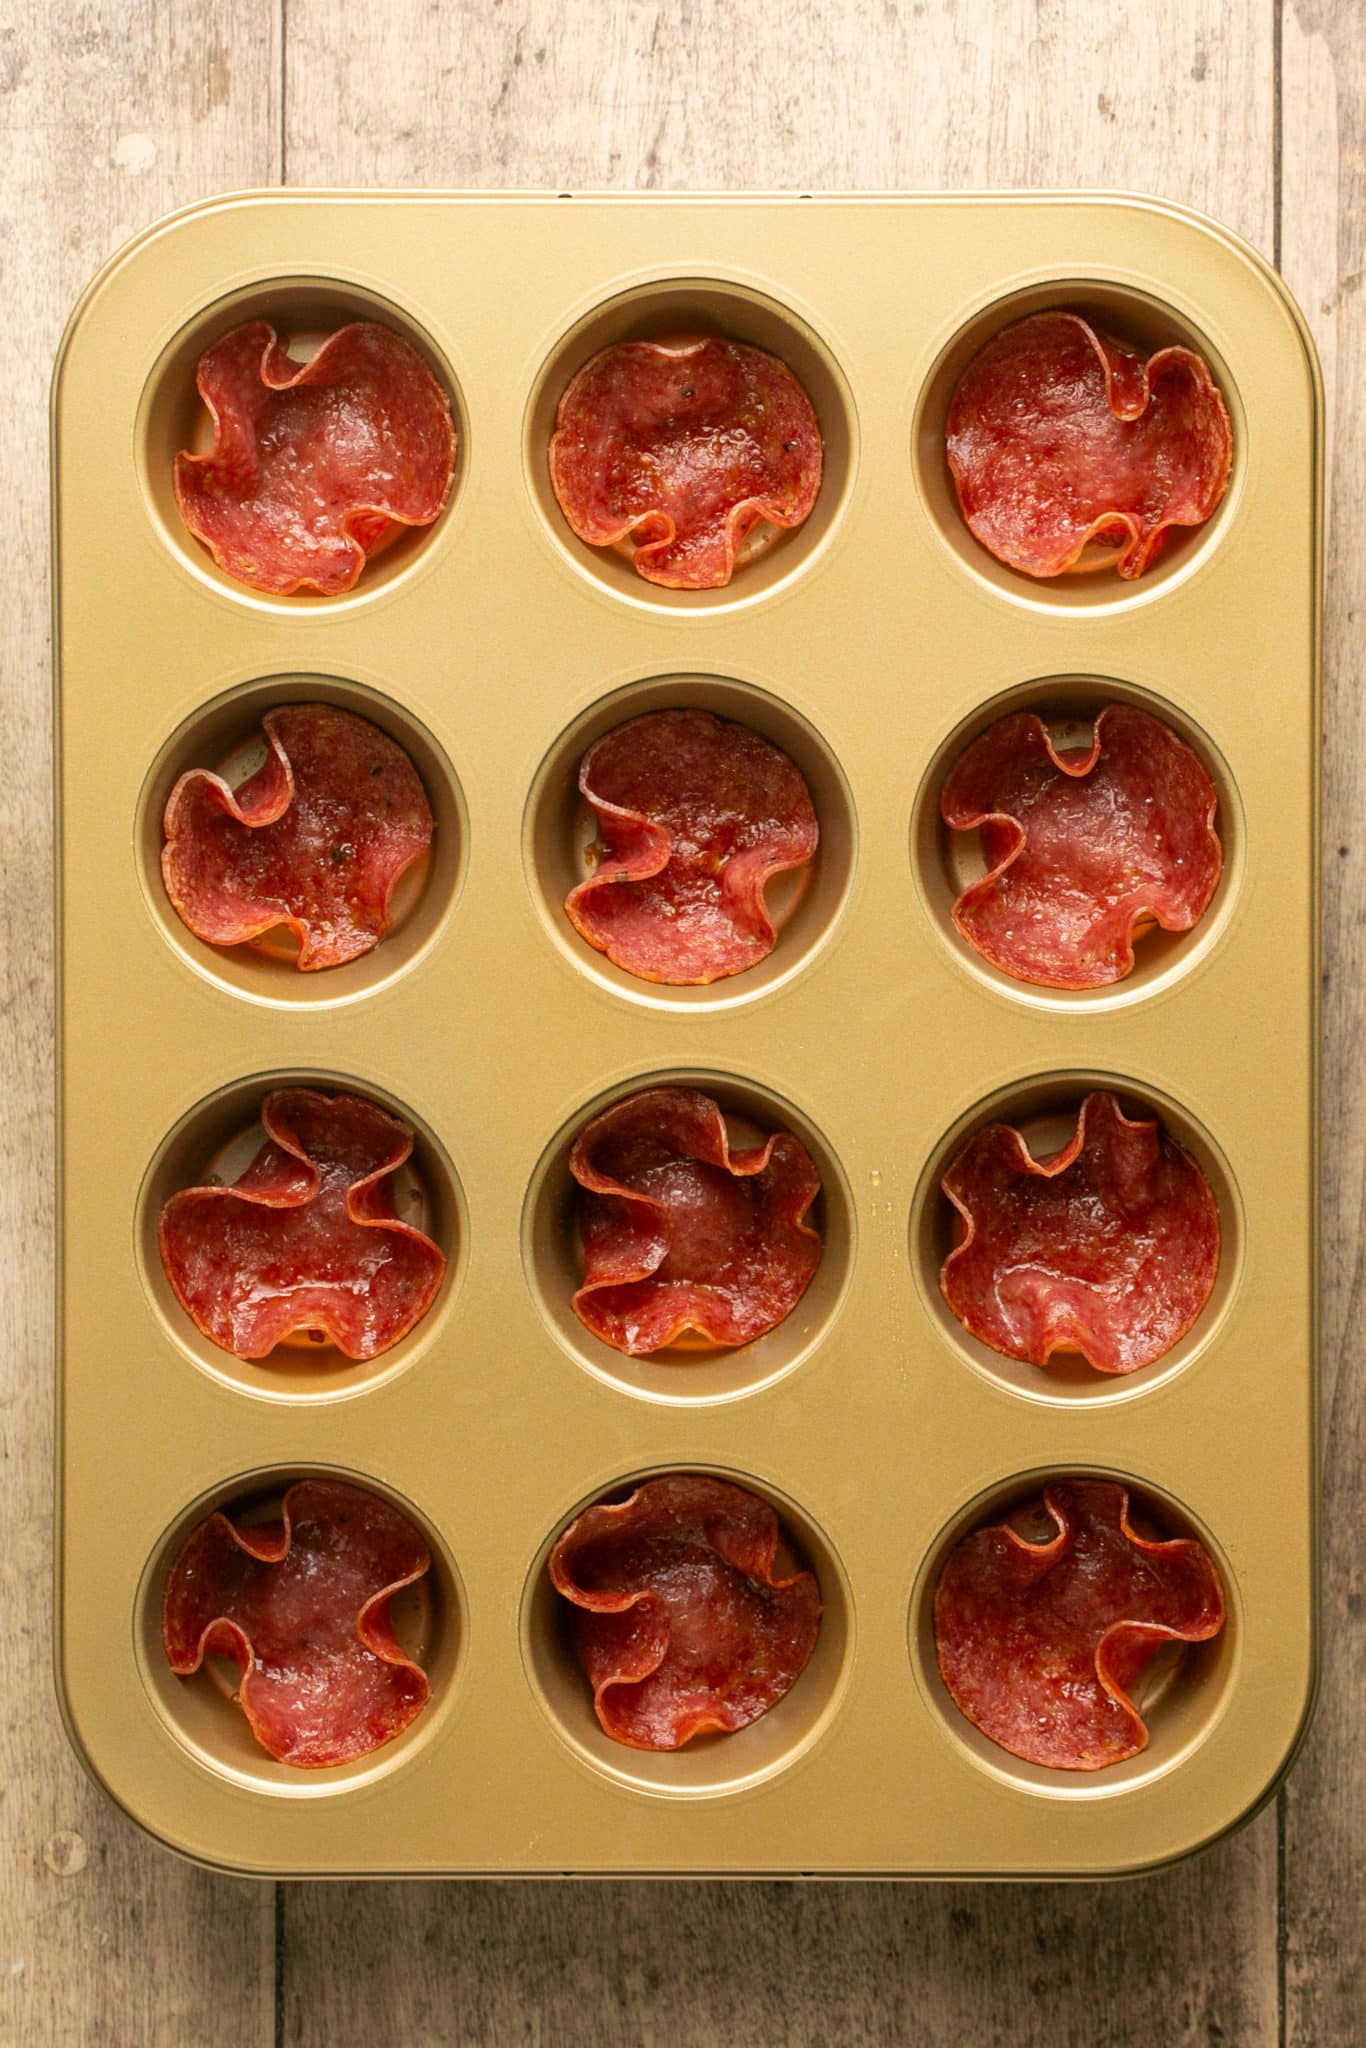 salami cups in a muffin tin. 